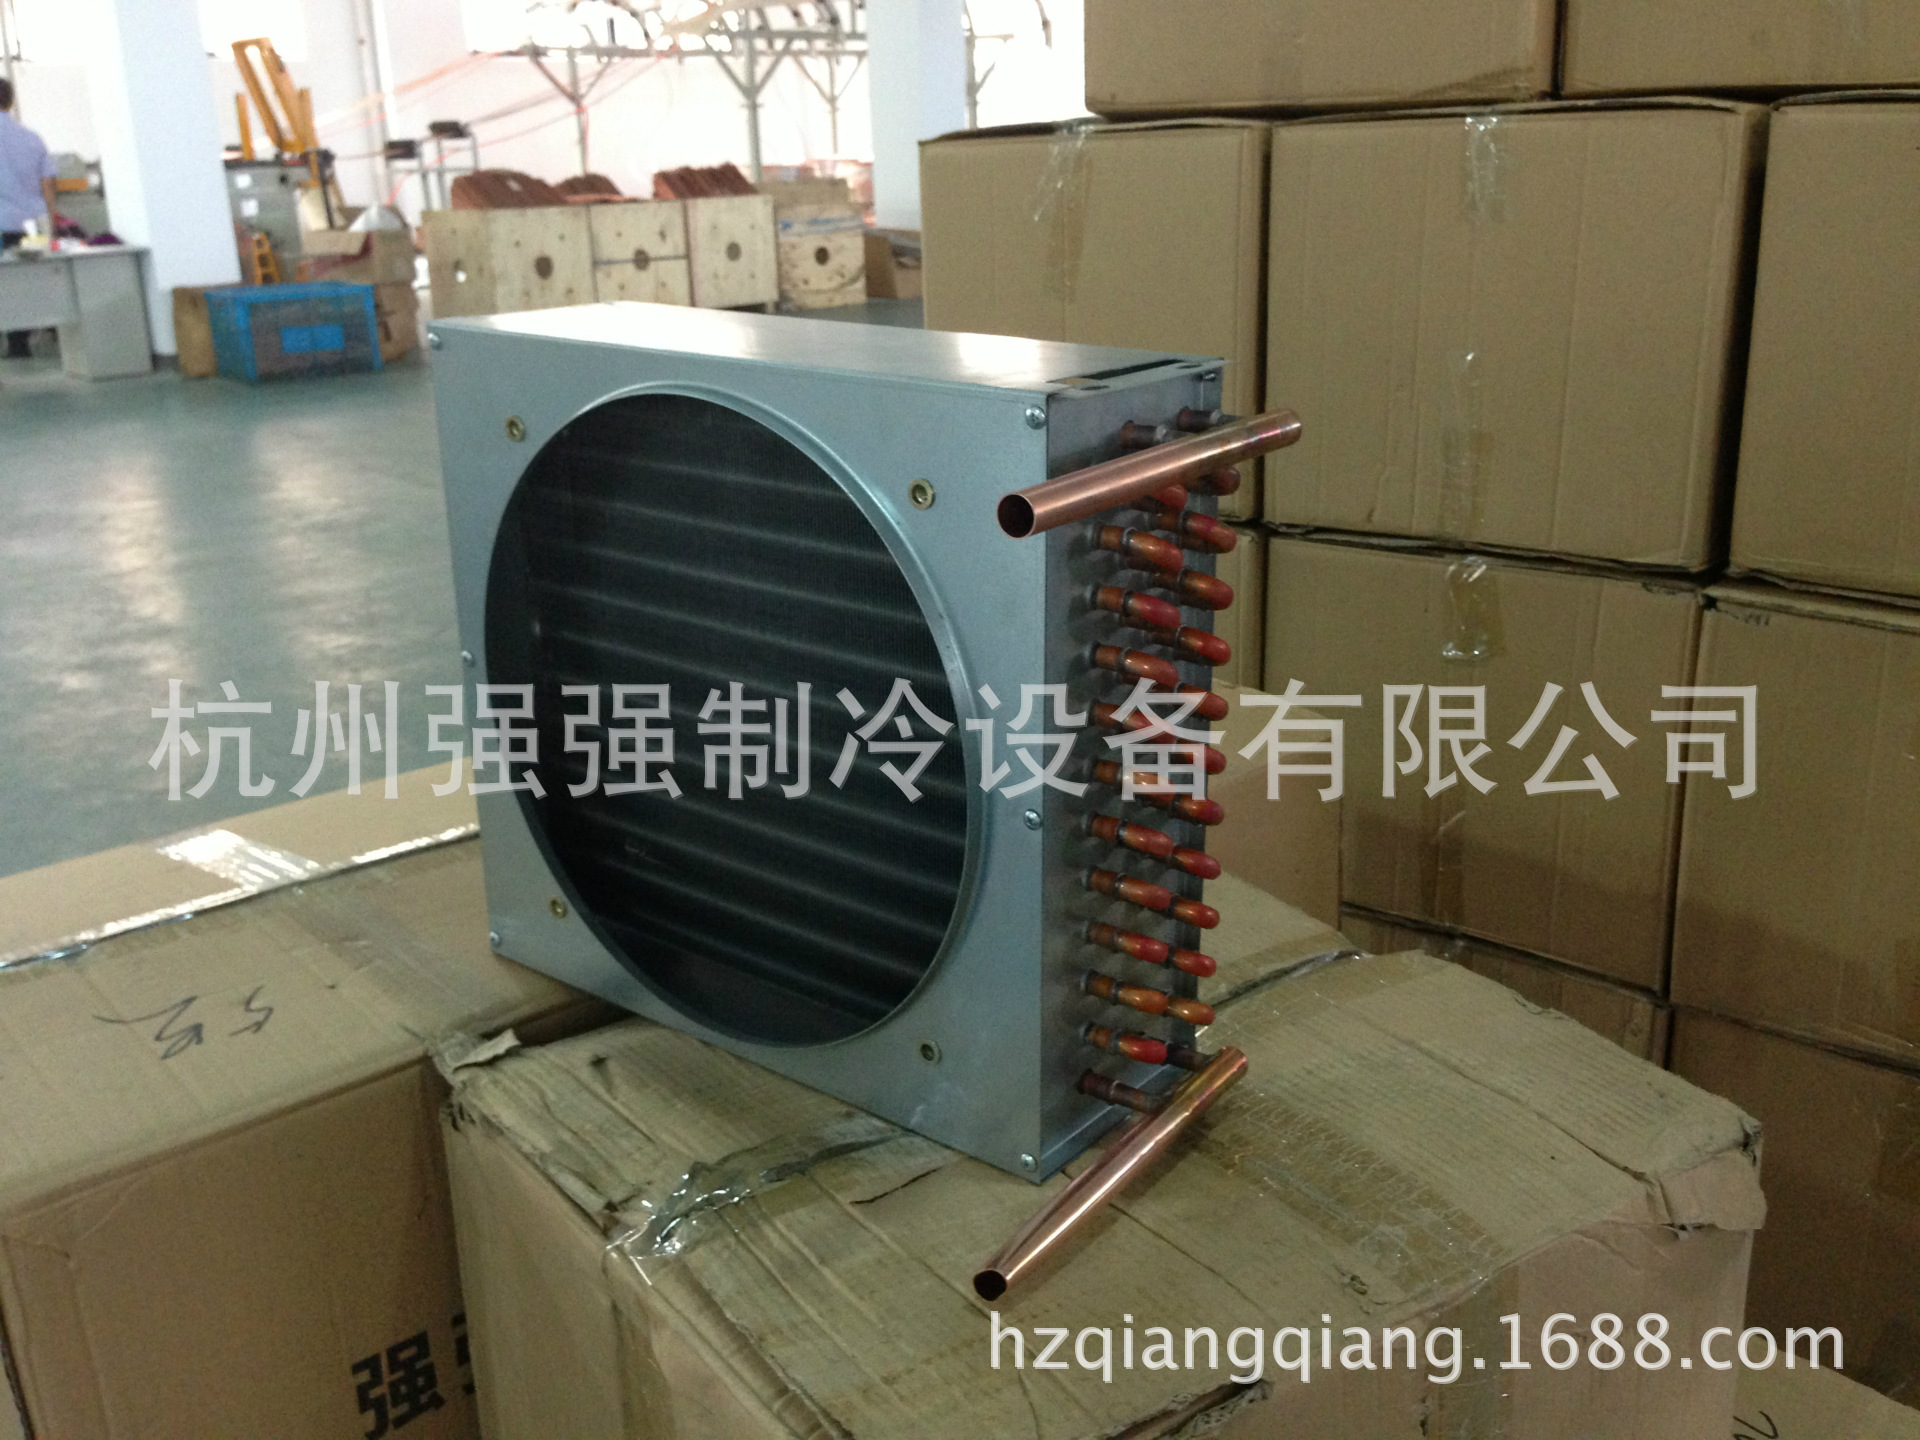 冷凝器 翅片冷凝器 空调冷凝器 冷柜冷凝器 中央空调冷凝器